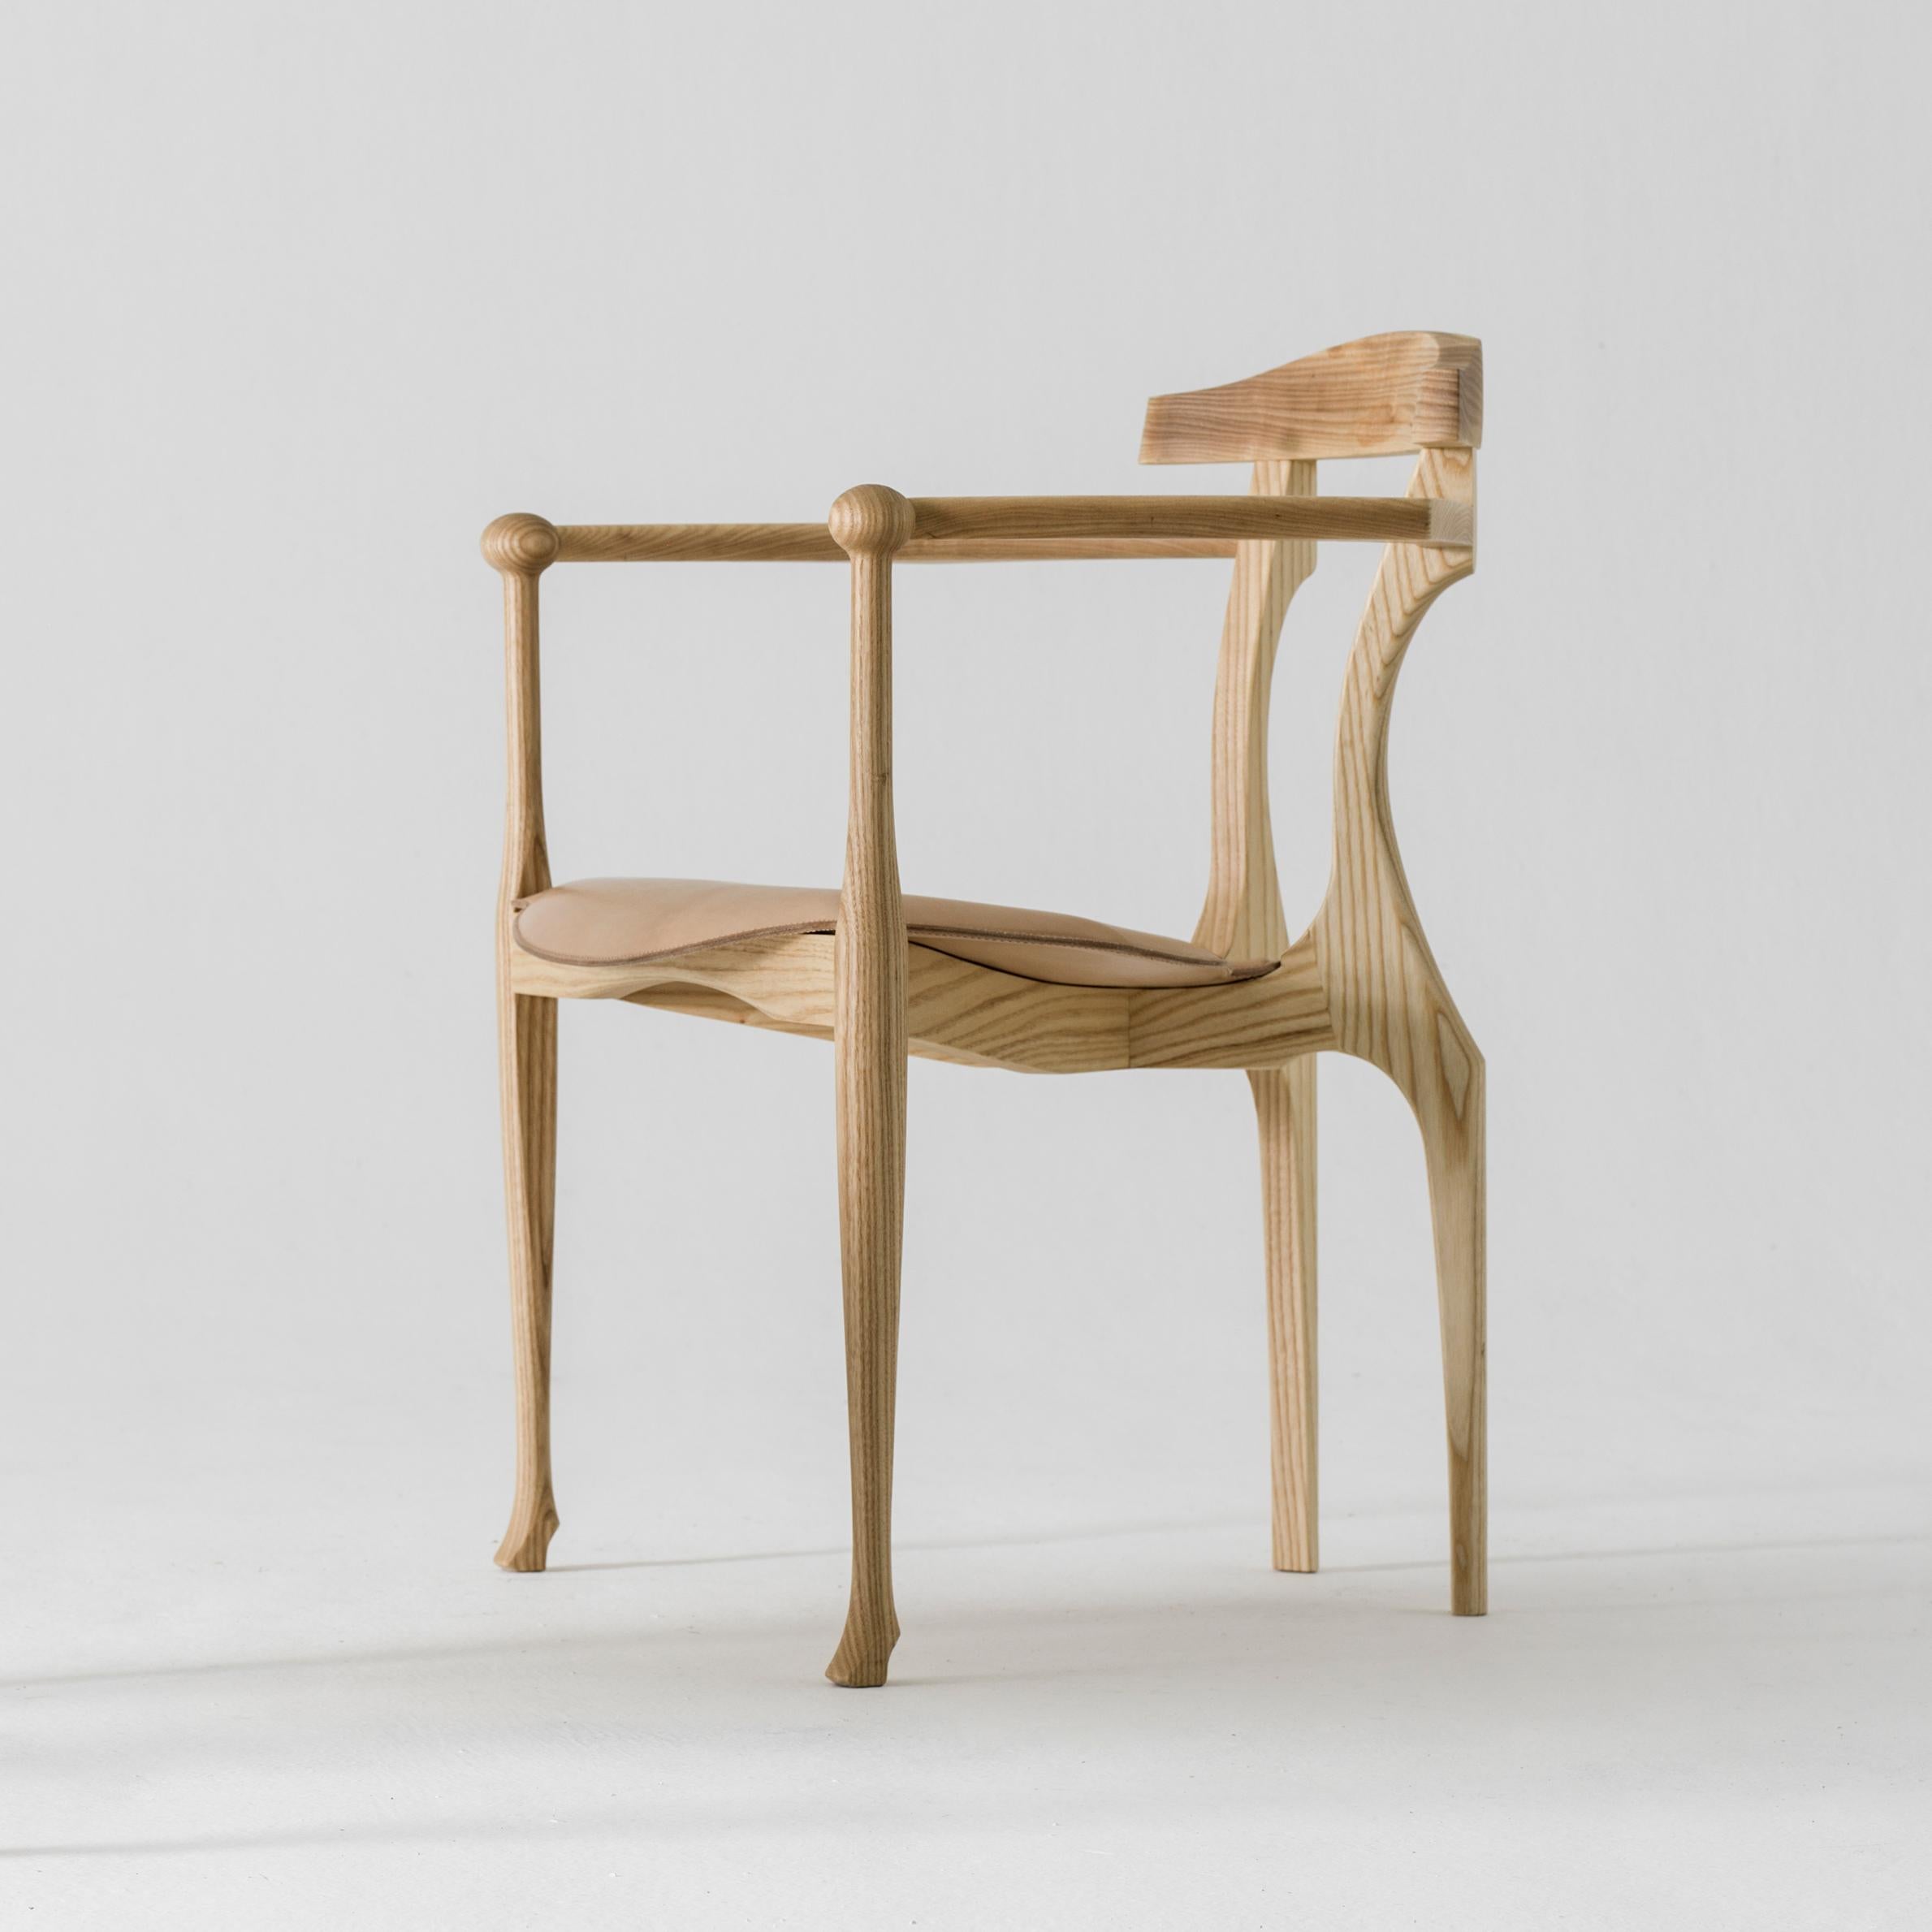 Gaulino Sessel, entworfen von Oscar Tusquets, hergestellt von BD Barcelona Design, ca. 2010.

Massive, naturlackierte Esche mit Sitz aus Naturleder


Der 1987 entworfene Stuhl Gaulino wurde 1989 für den Preis für Industriedesign und Adi-Fad und 1990